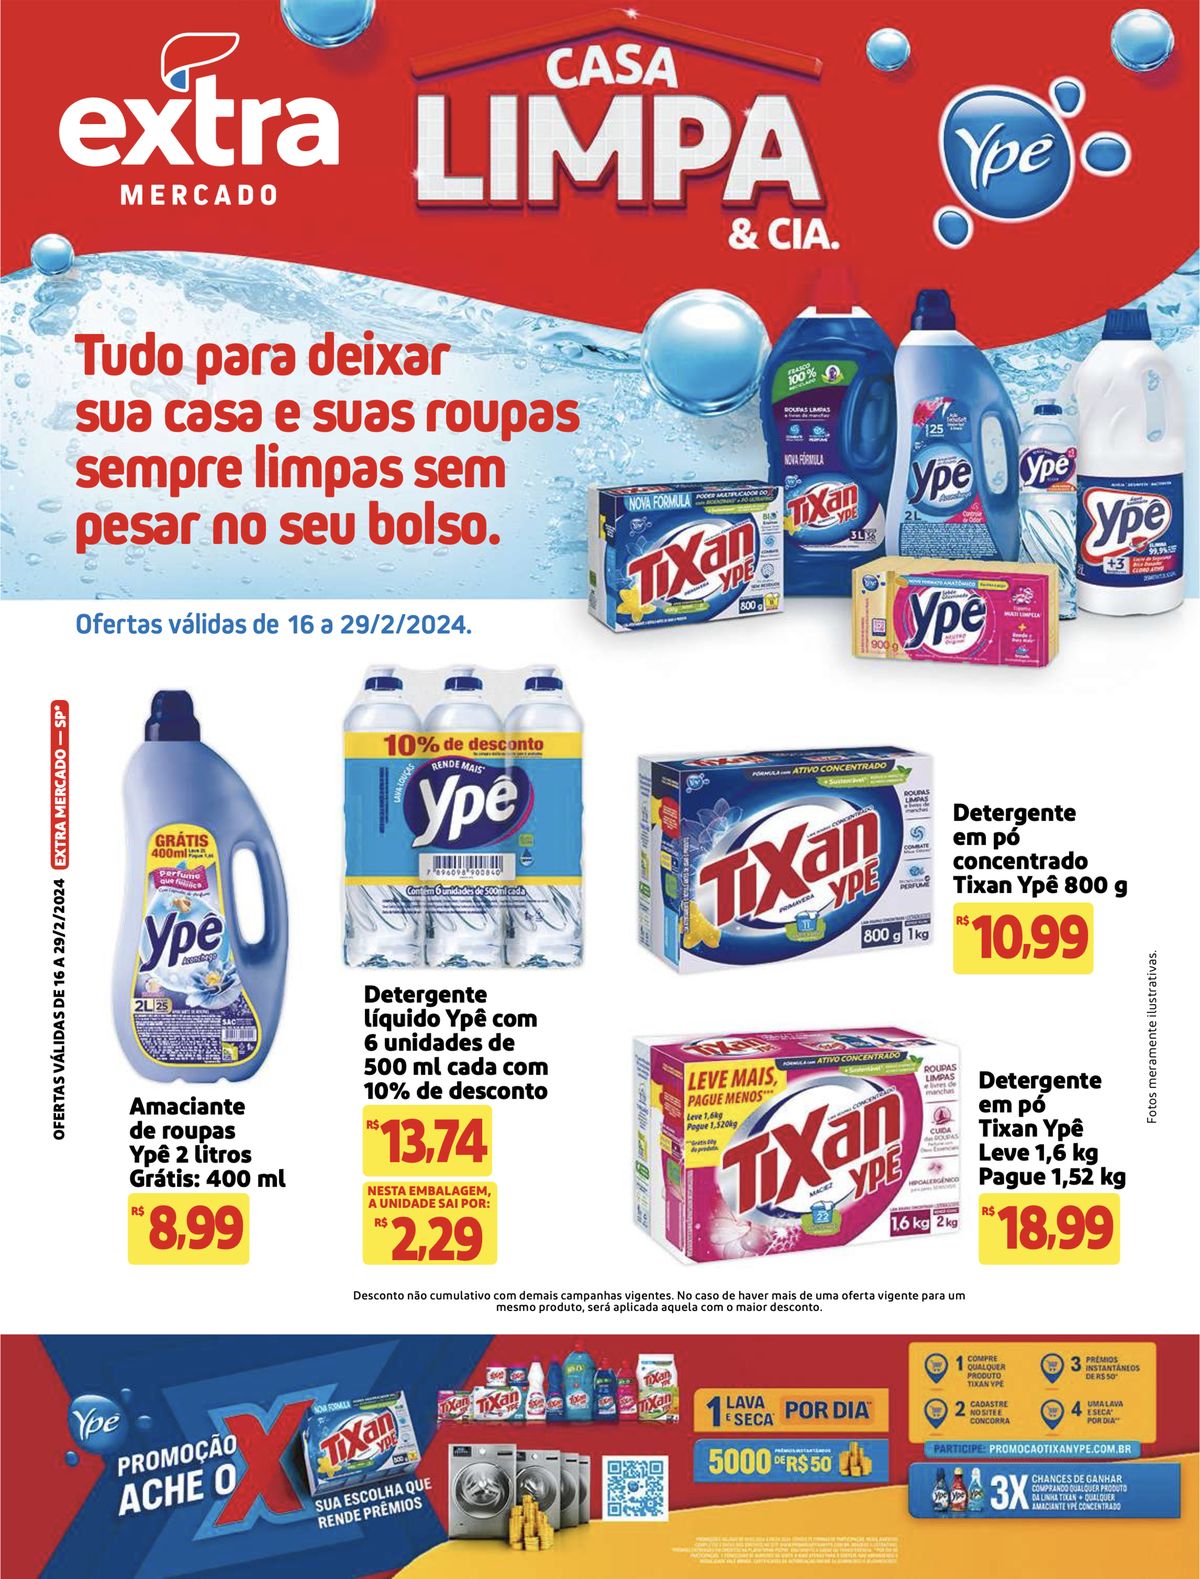 Ofertas de Detergentes Ypê no Mercado Extra